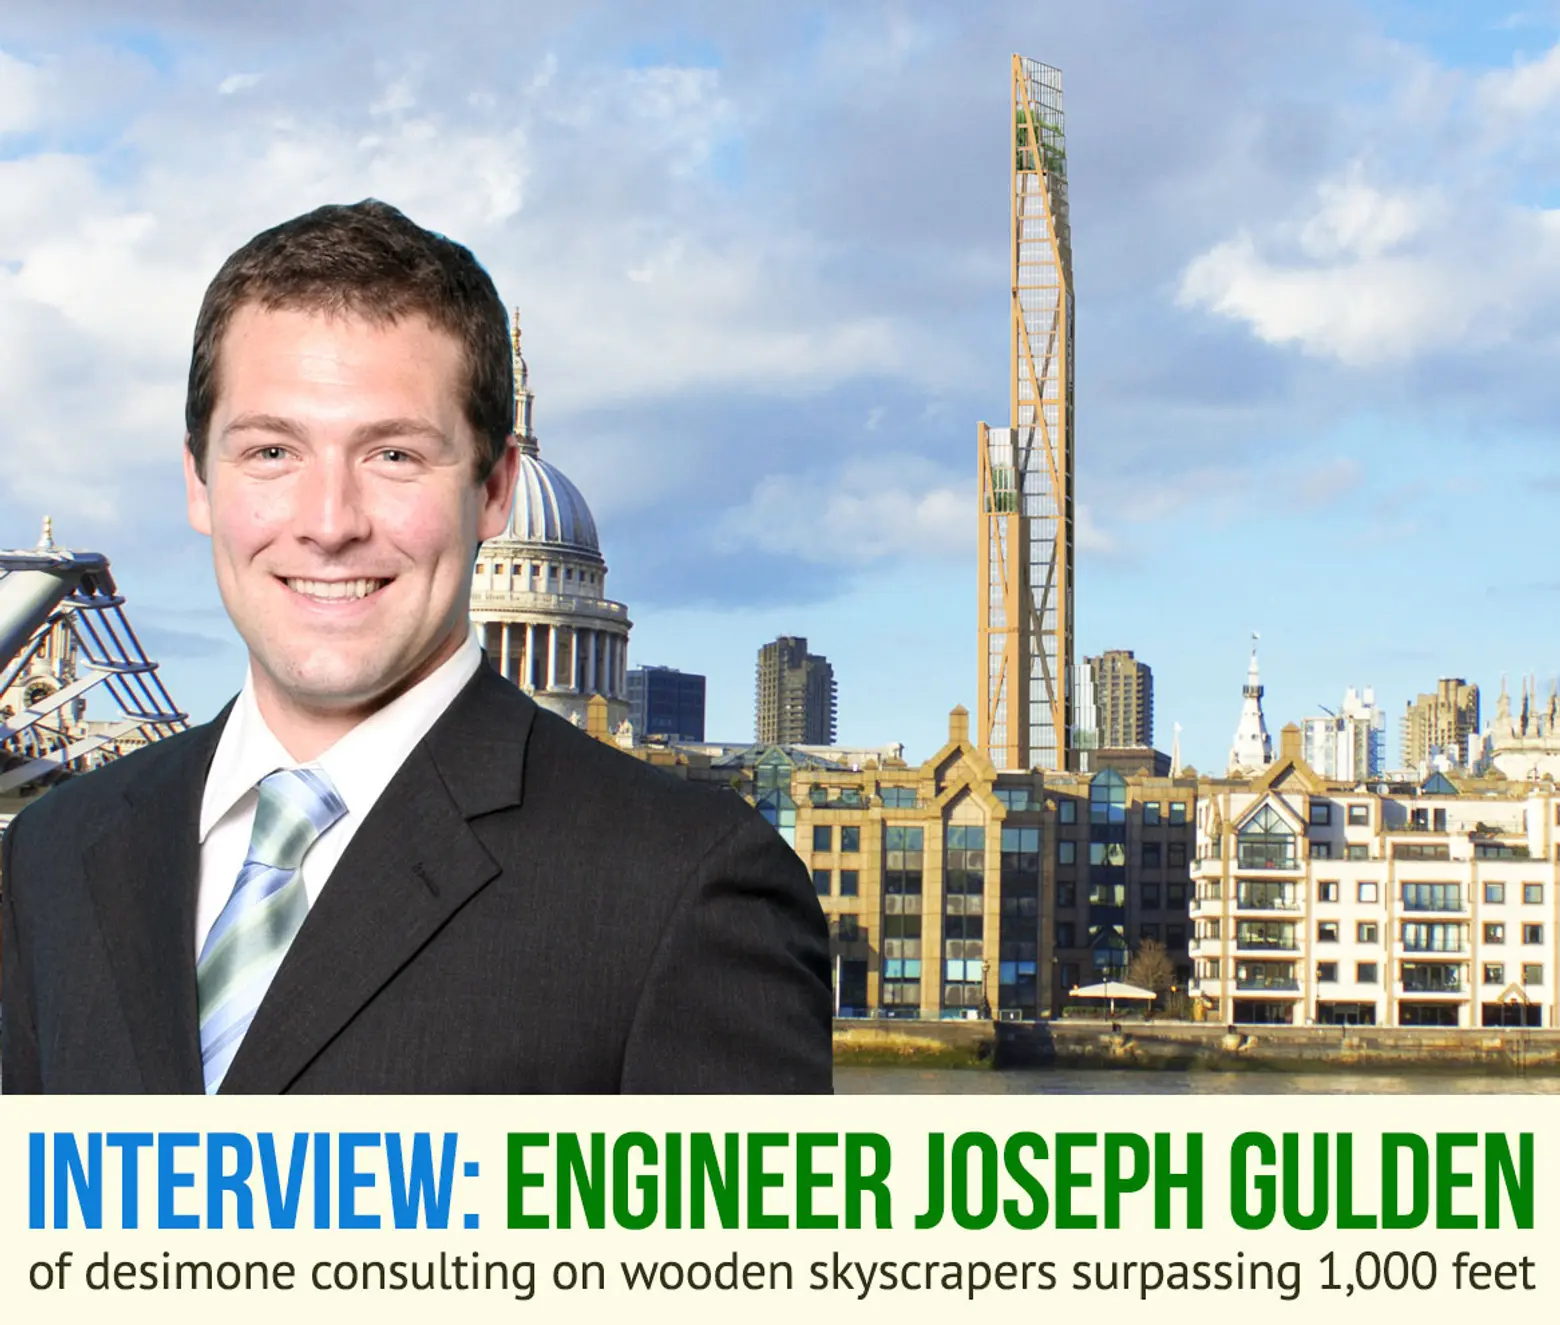 Interview: Engineer Joseph Gulden Discusses Wooden Skyscrapers Surpassing 1,000 Feet